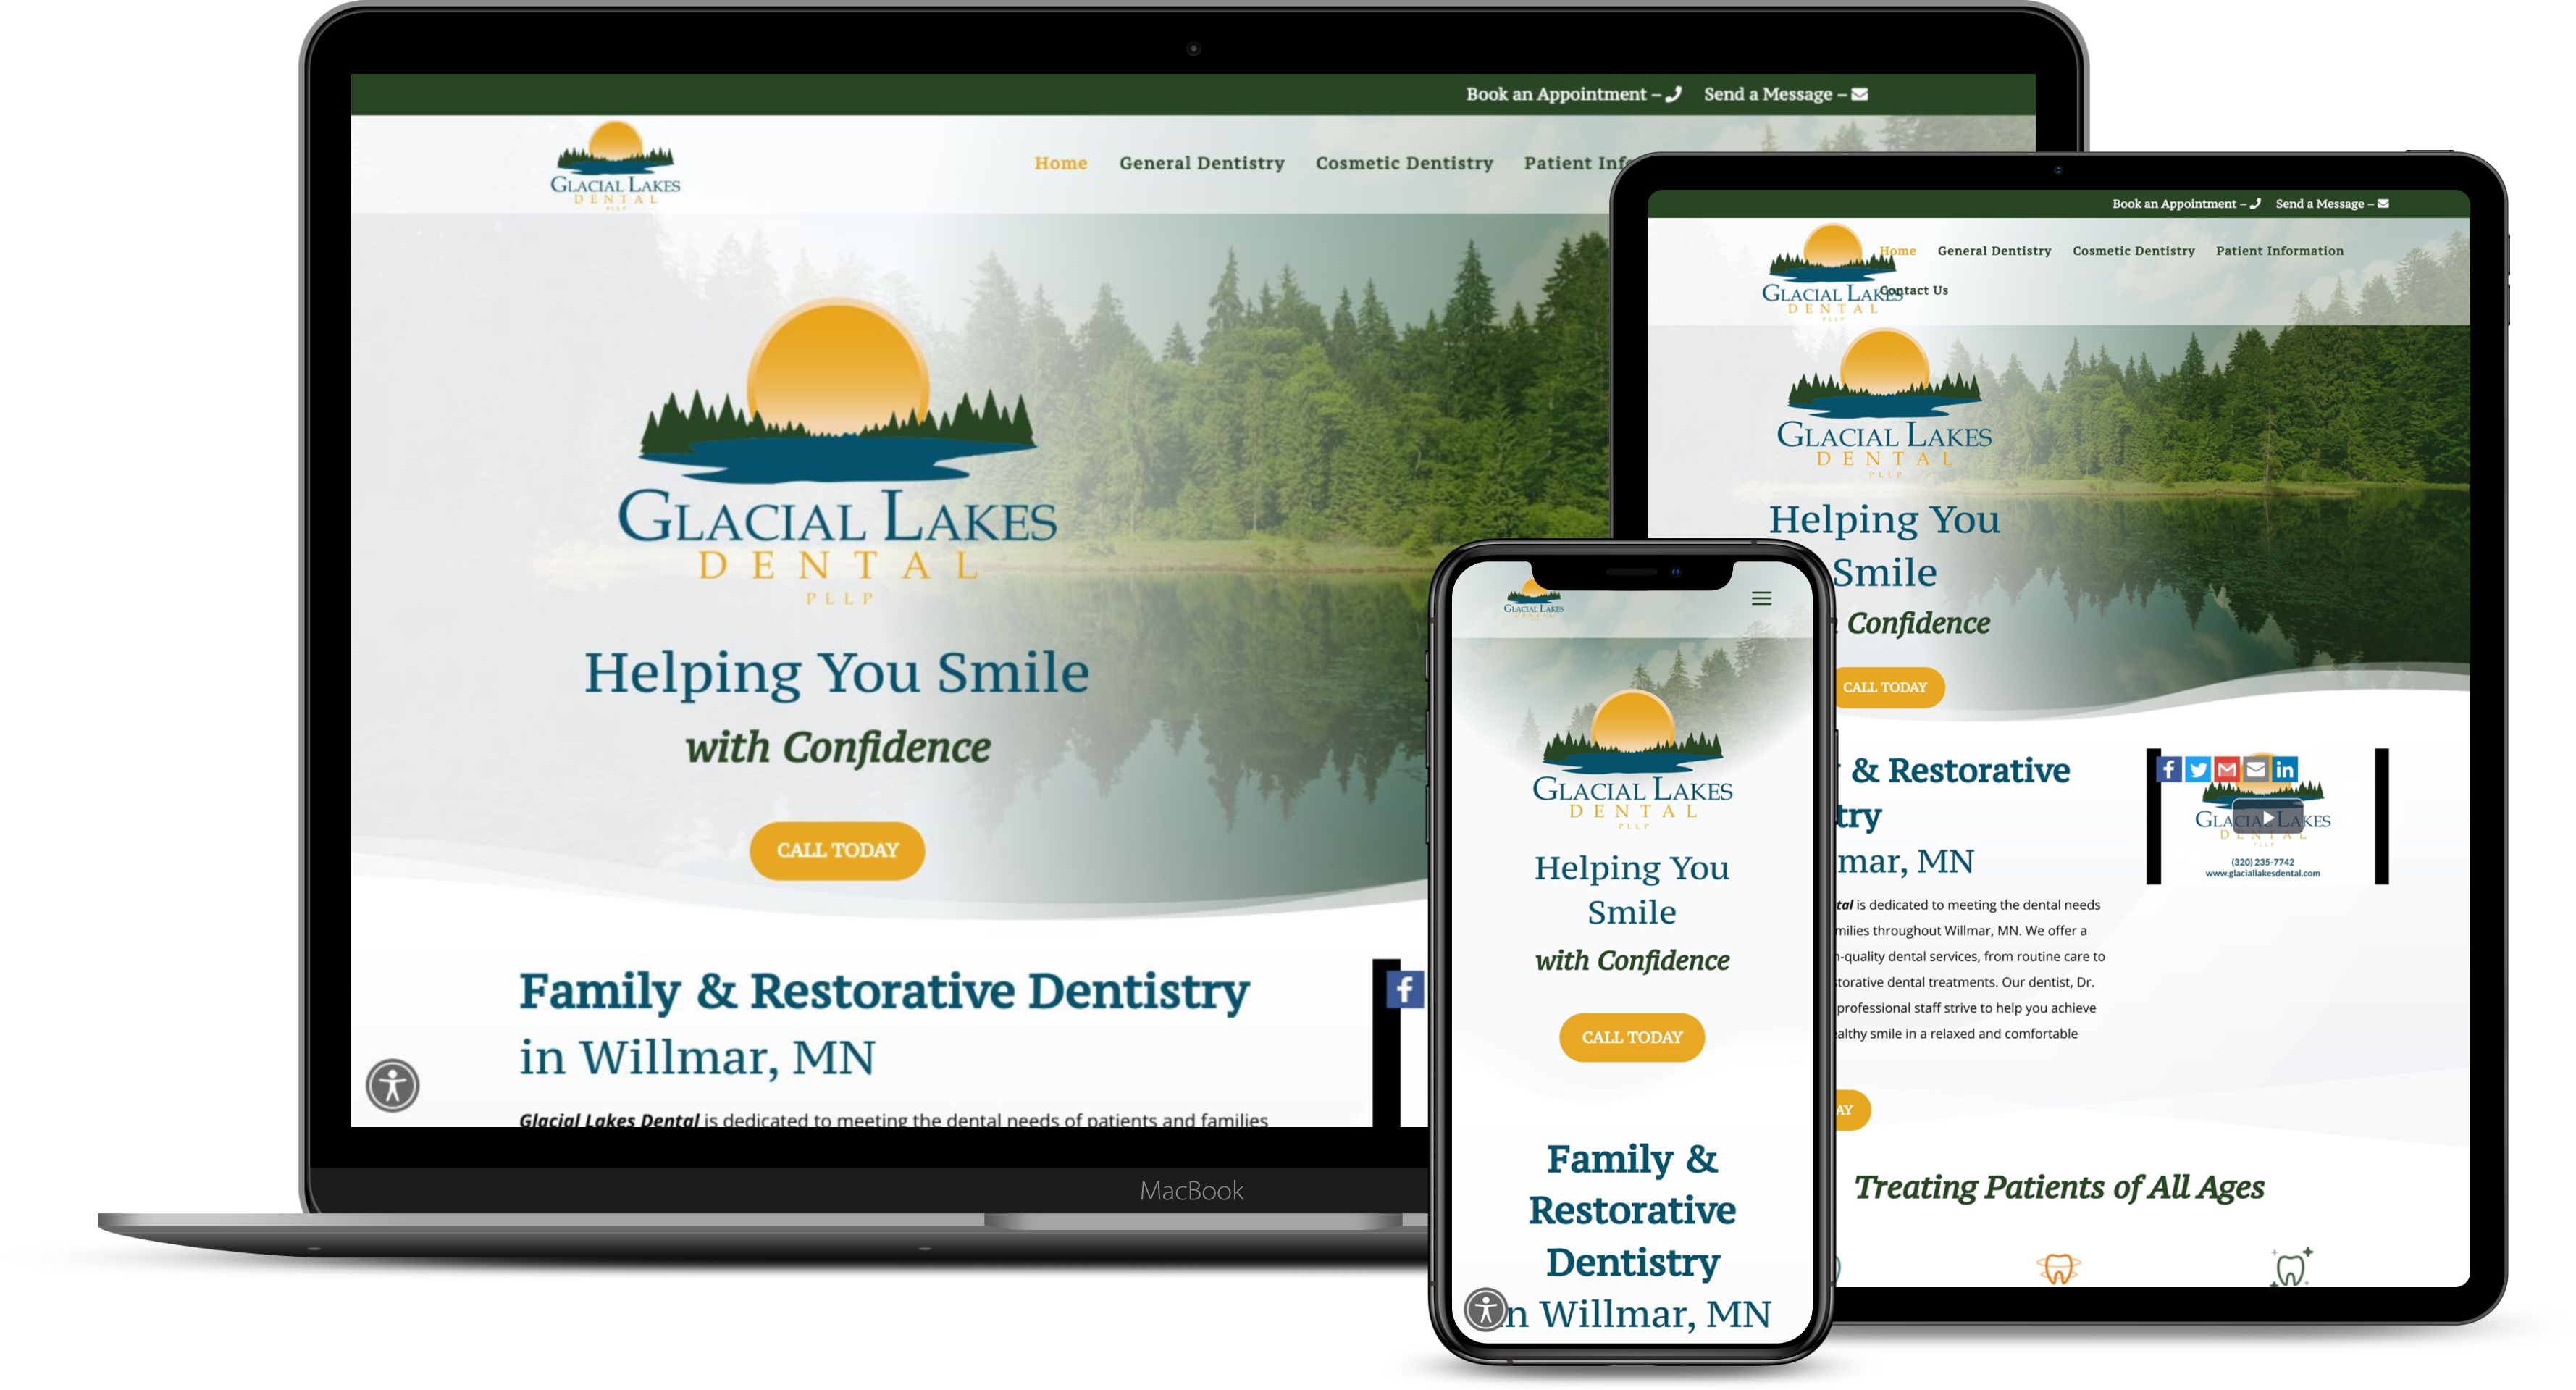 Glacial Lakes Dental